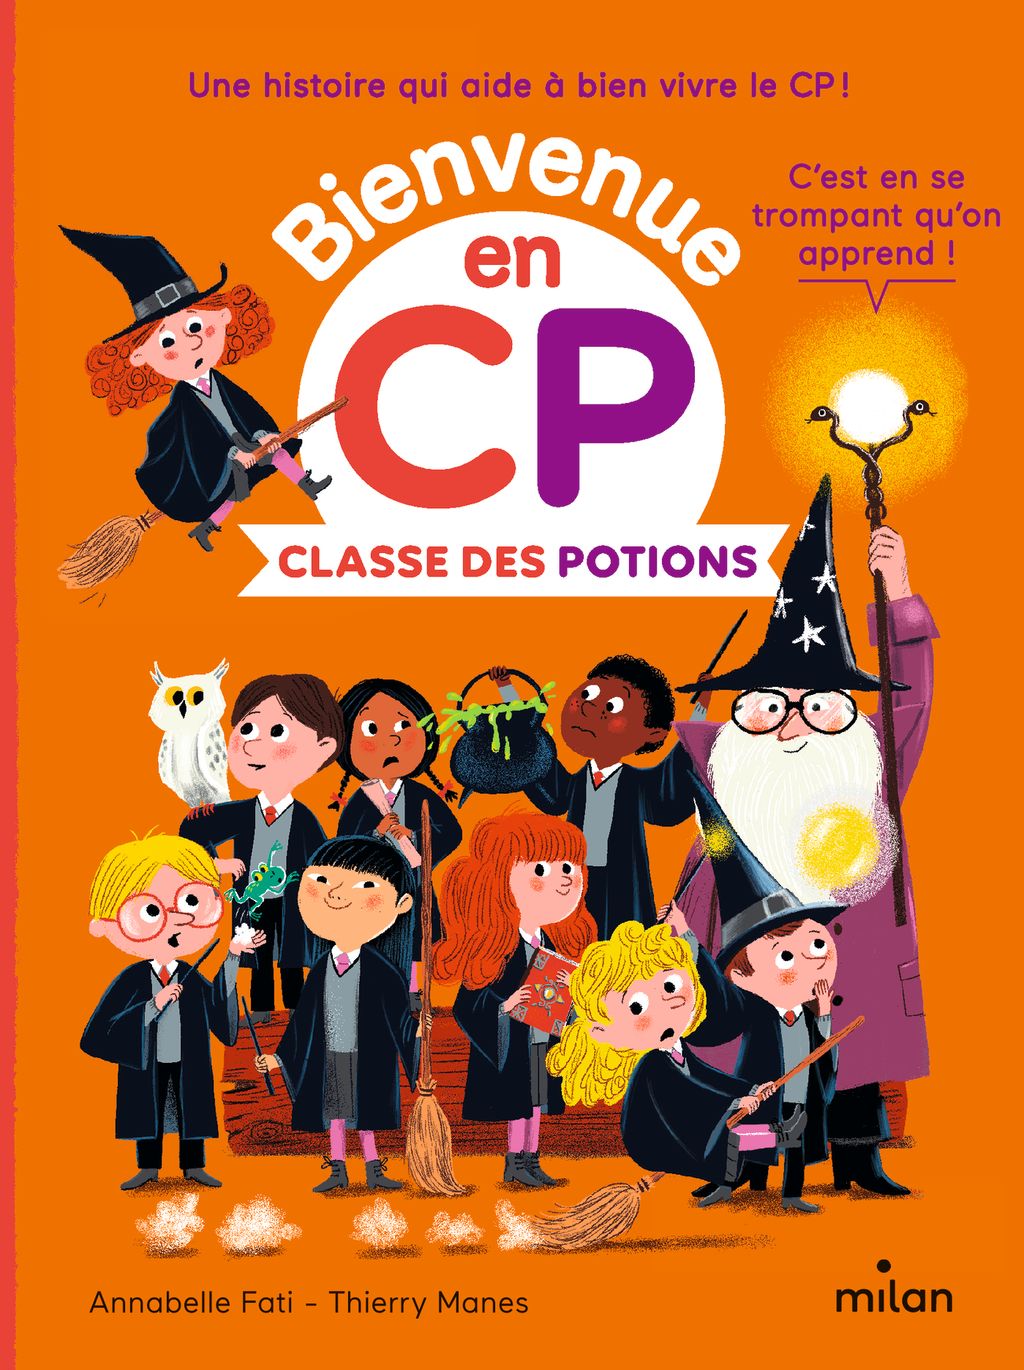 « Classe des potions » cover